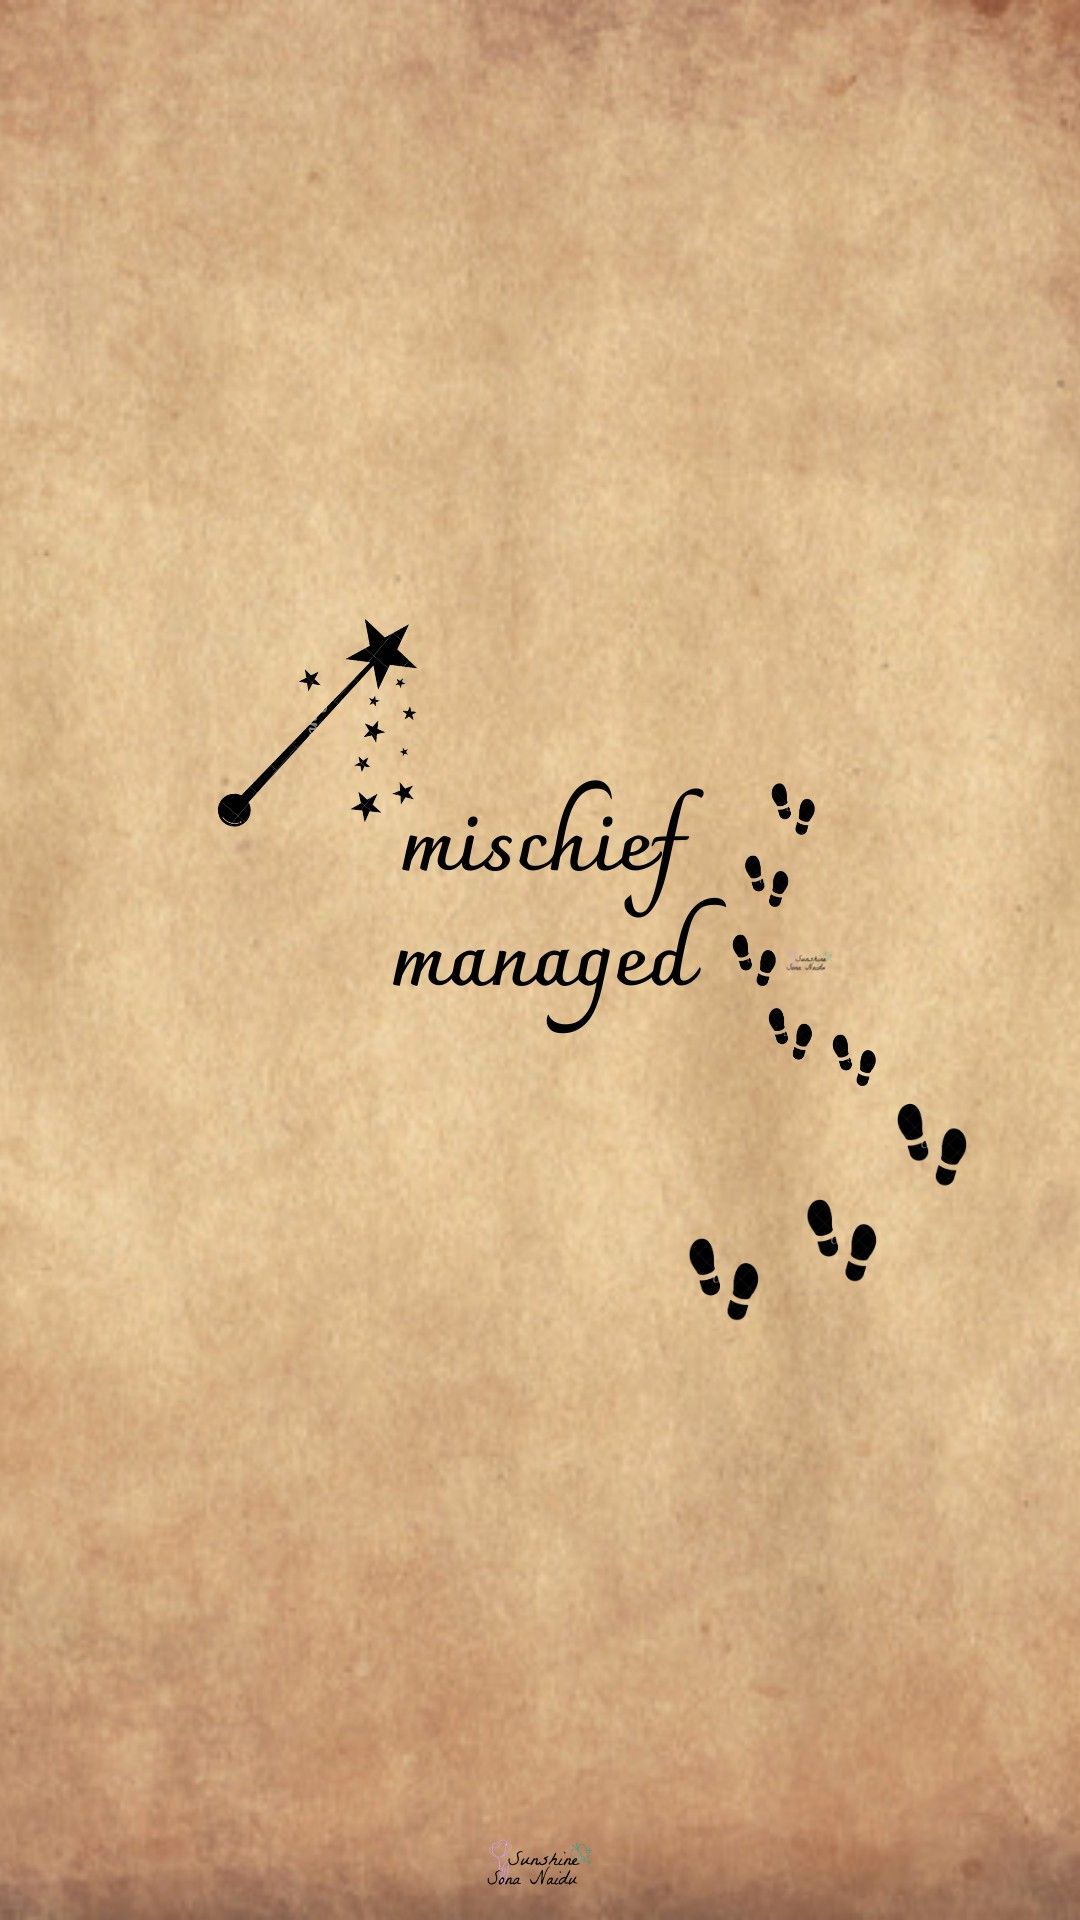 mischief managed quote